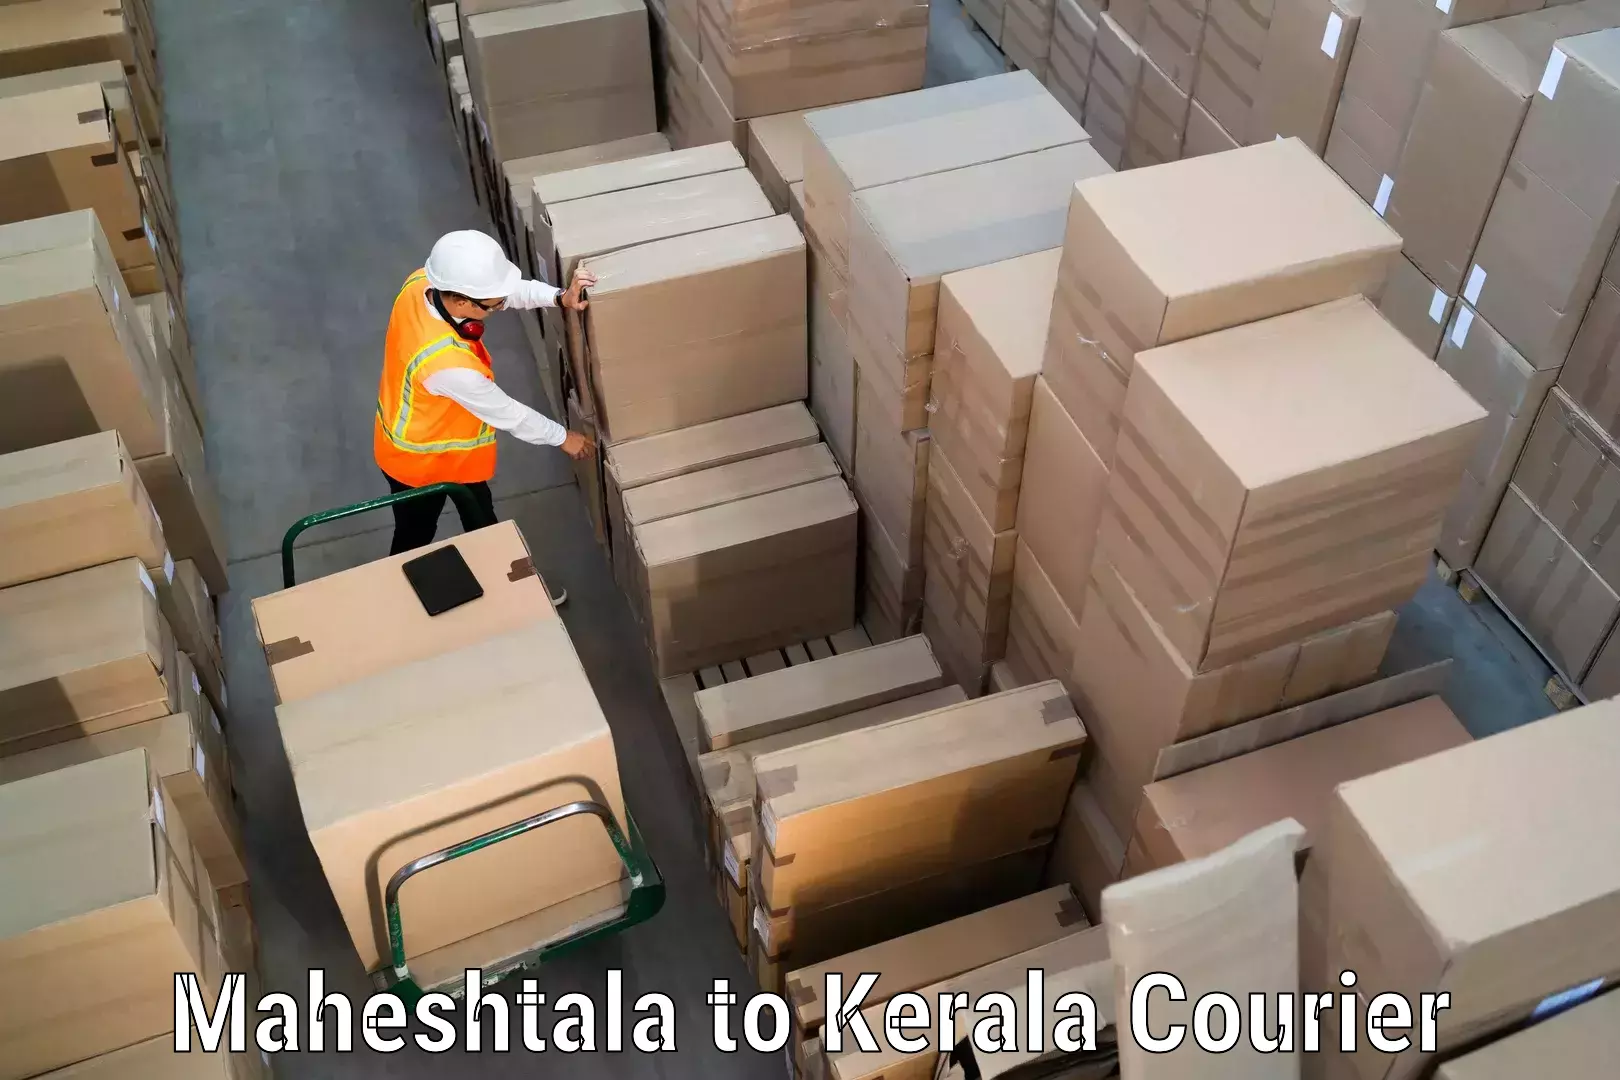 Express logistics service Maheshtala to Kattappana